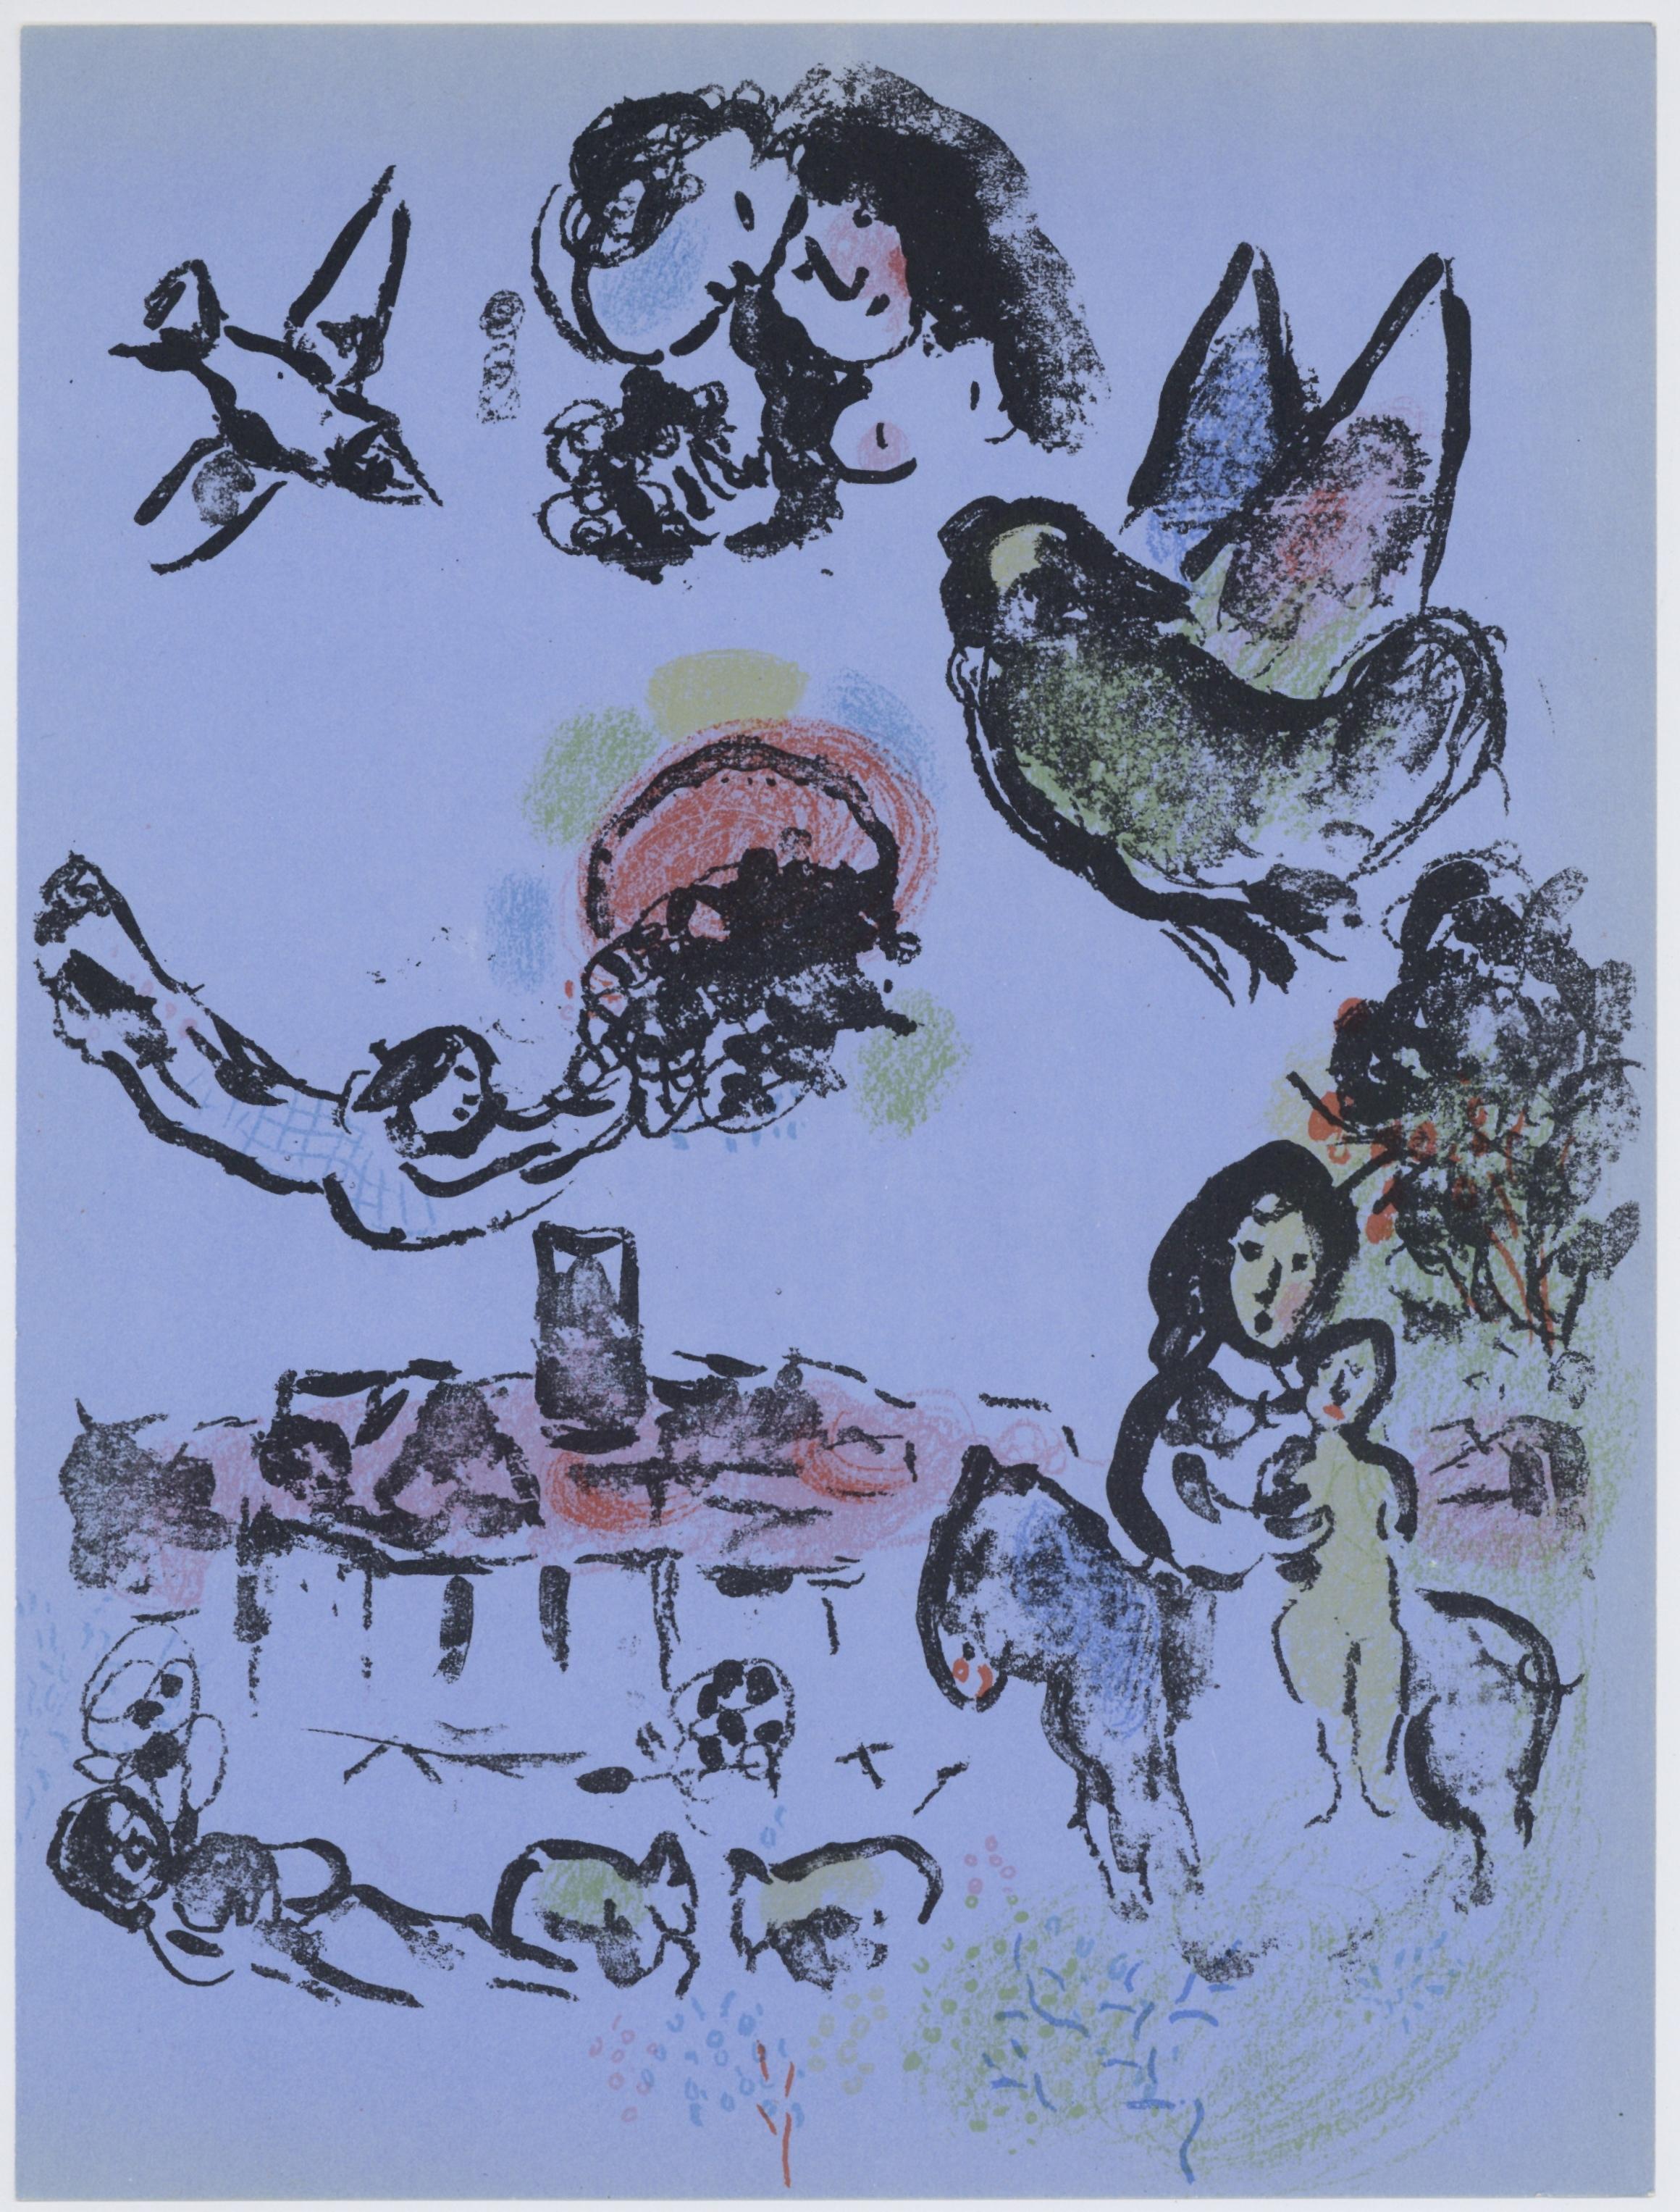 Marc Chagall Portrait Print - "Nocturne at Vence" original lithograph